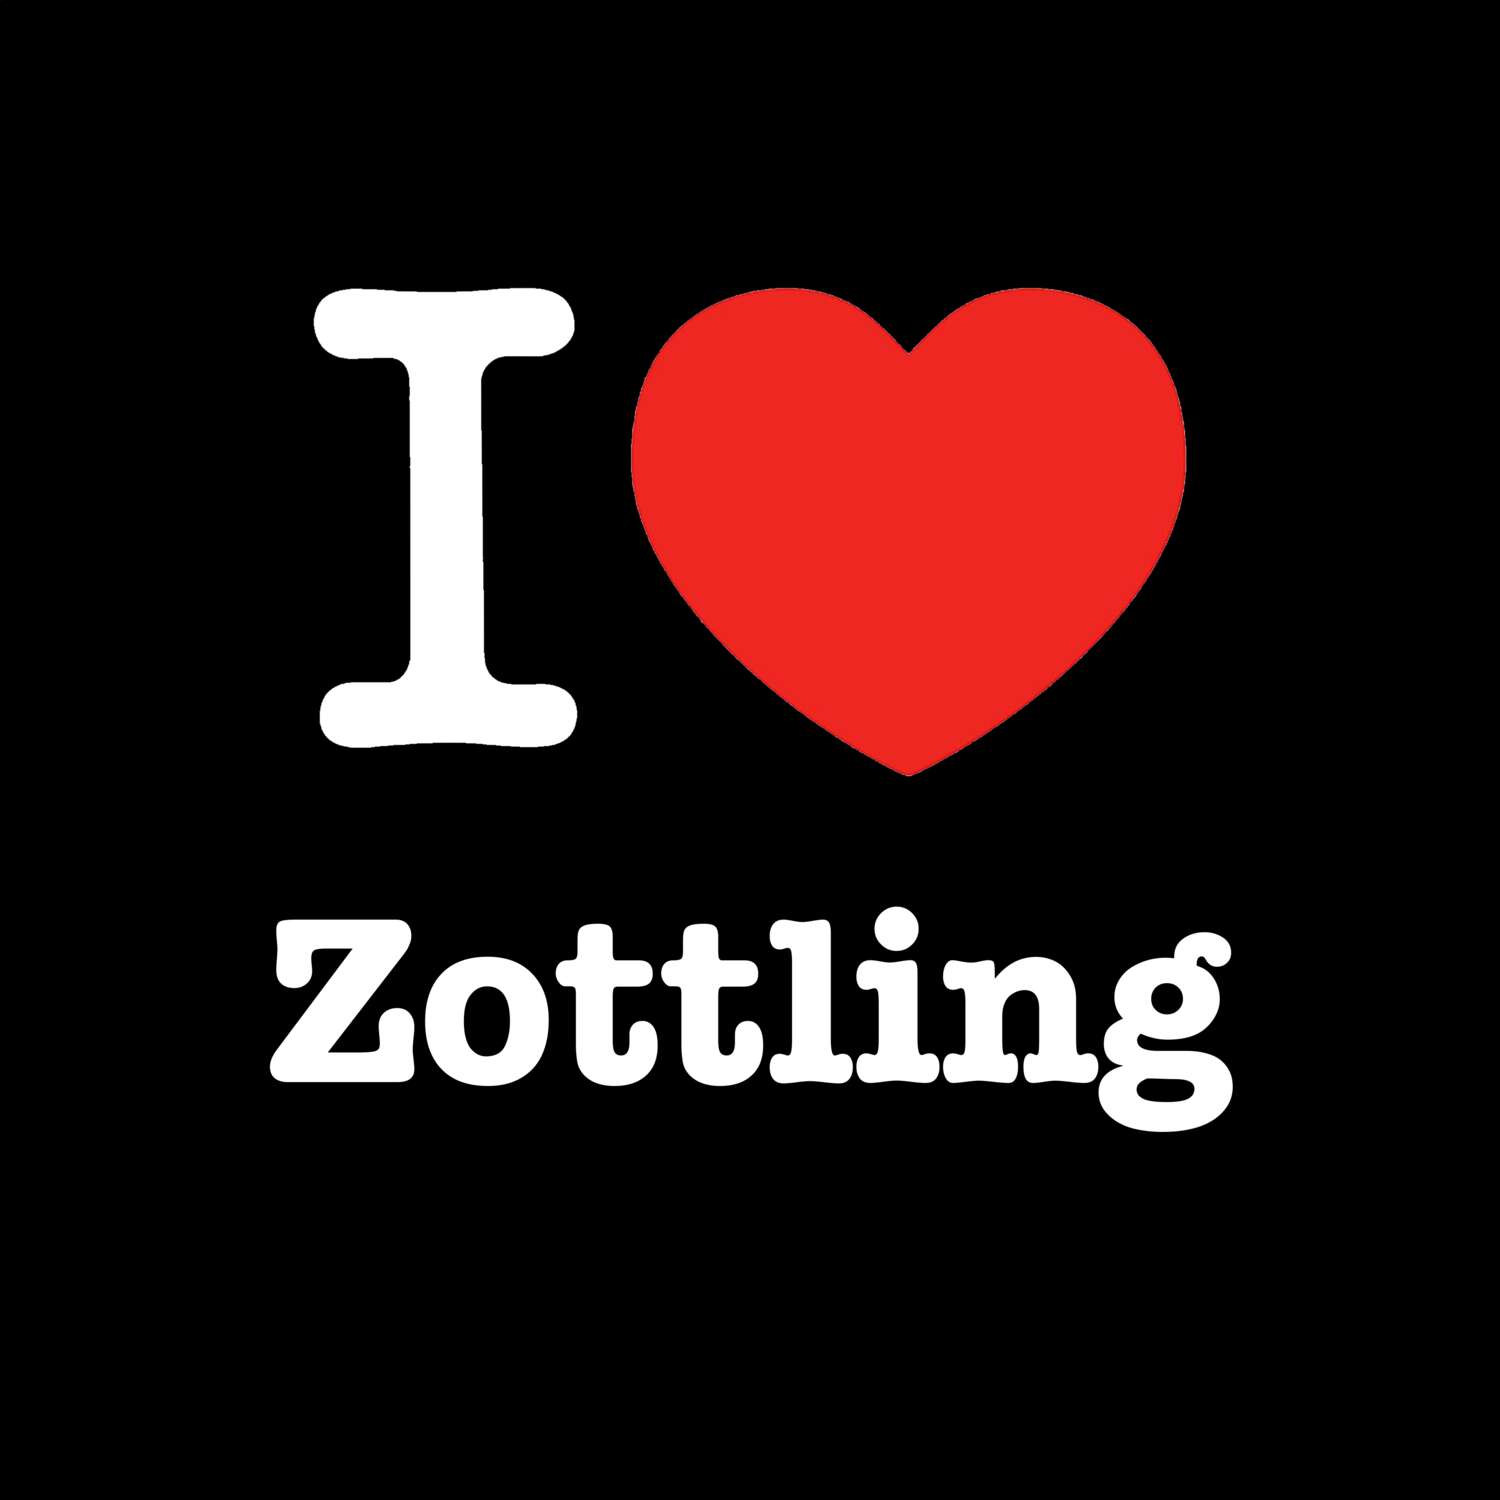 Zottling T-Shirt »I love«